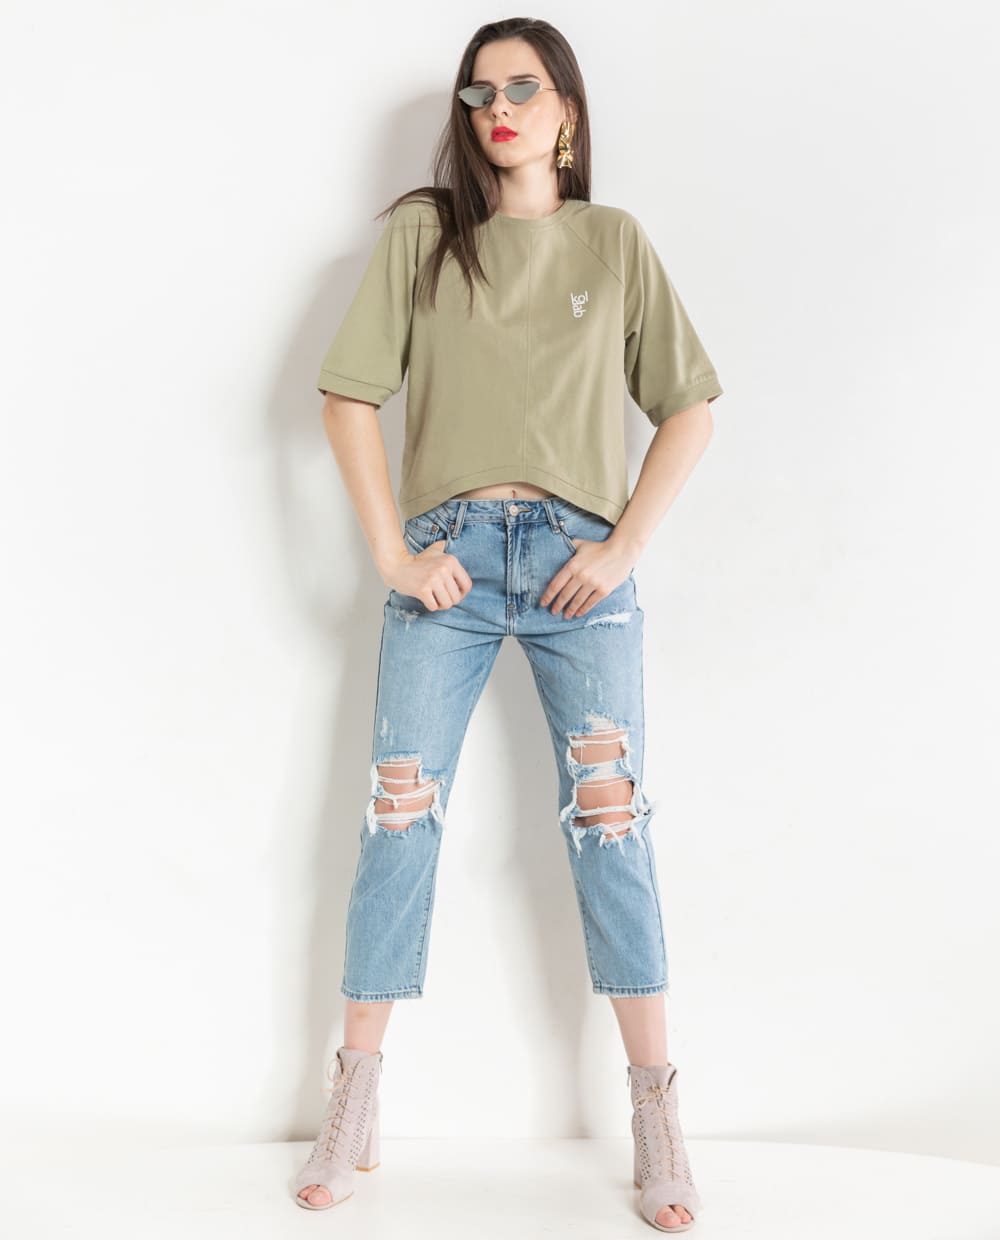 Áo thun nữ form rộng phối với quần jeans rách